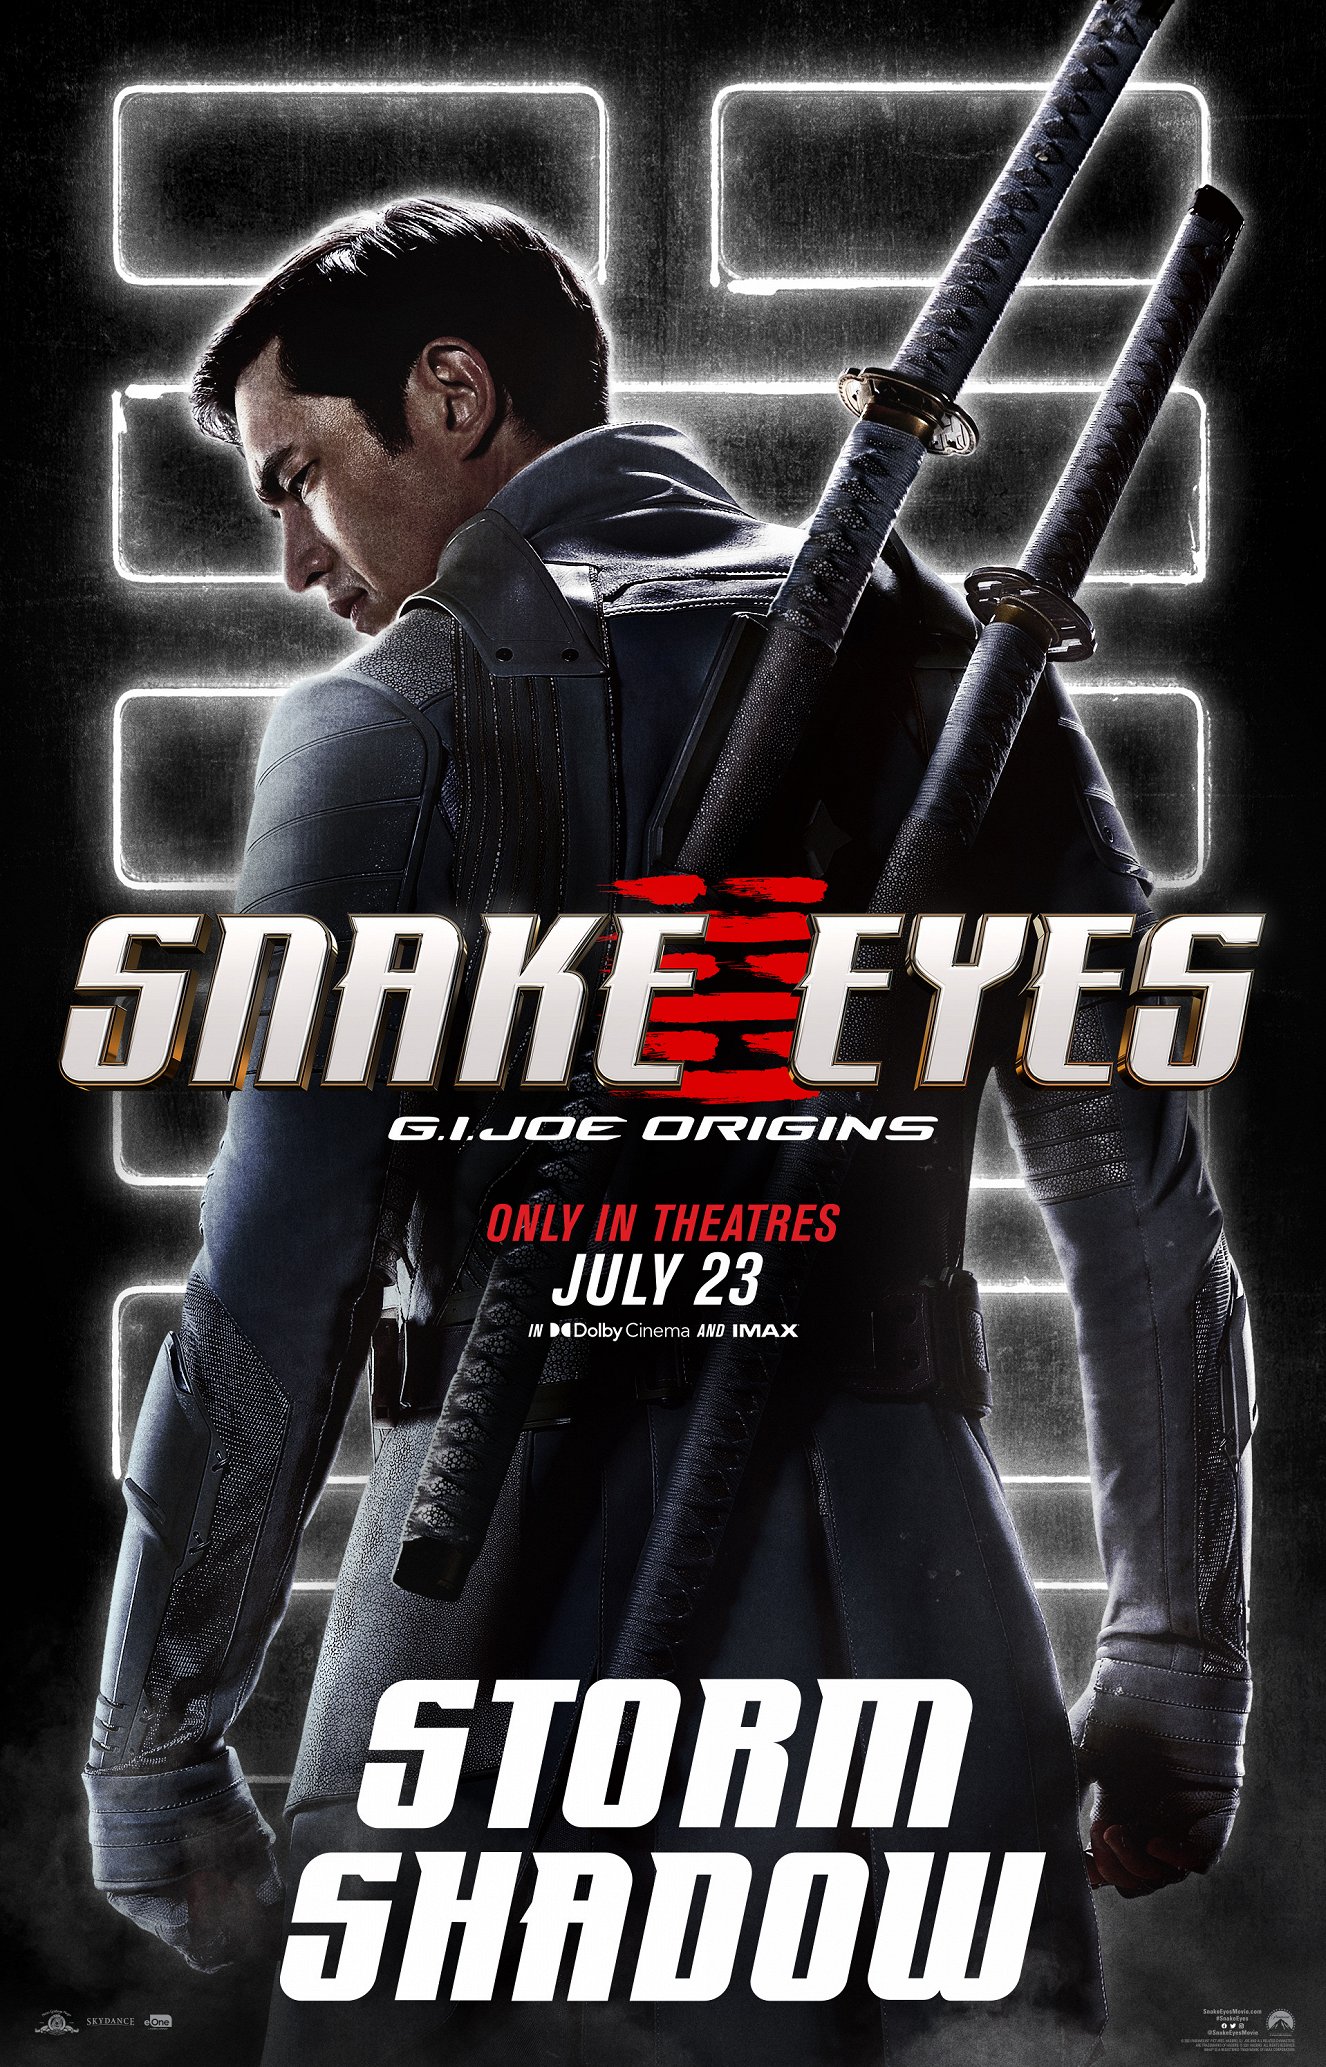 Snake Eyes 2021 Snake Eyes GI Joe Movie Release Date Delayed Until